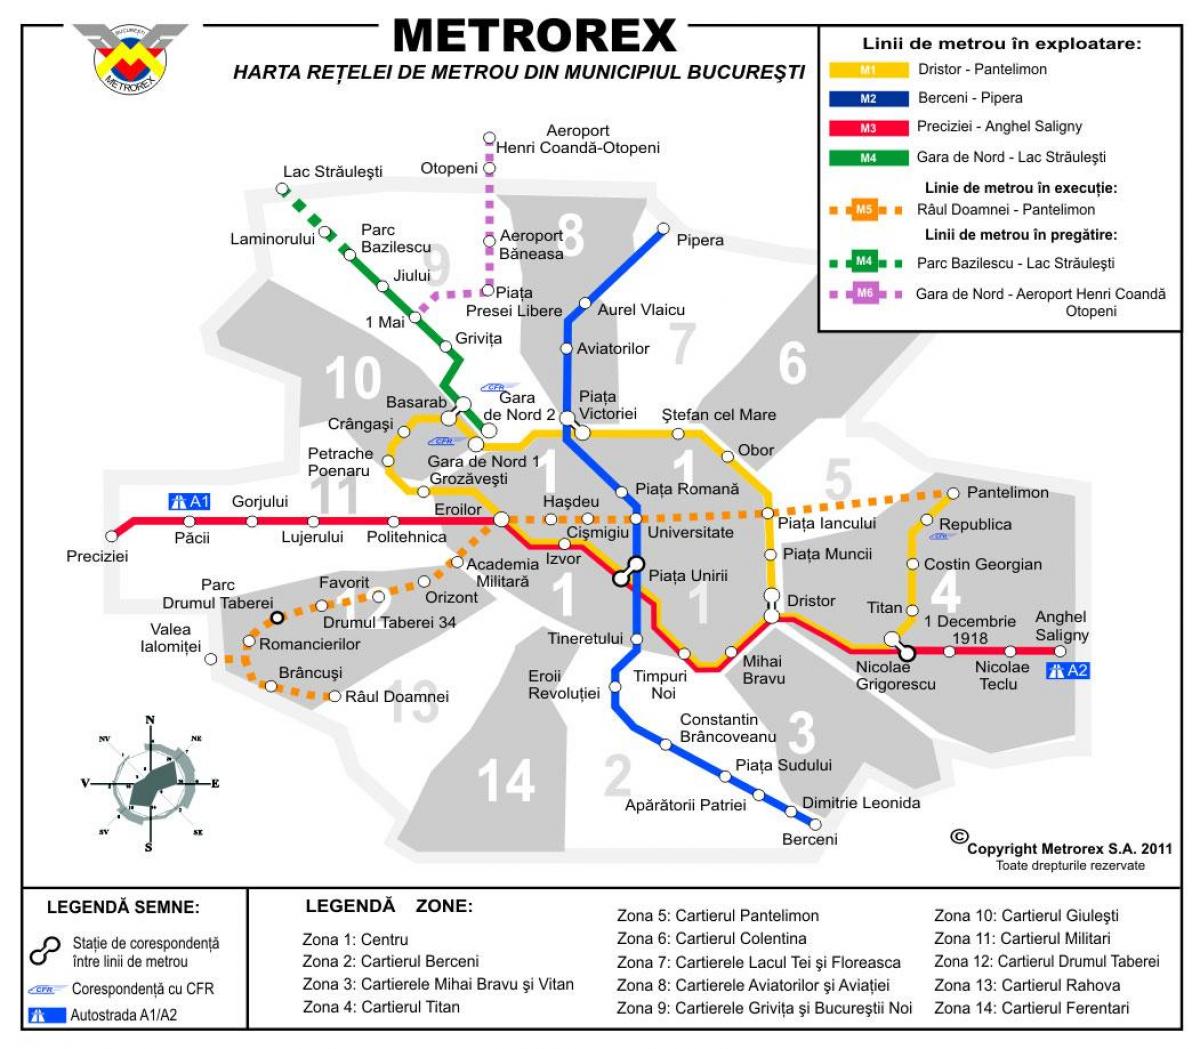 Χάρτης της metrorex 